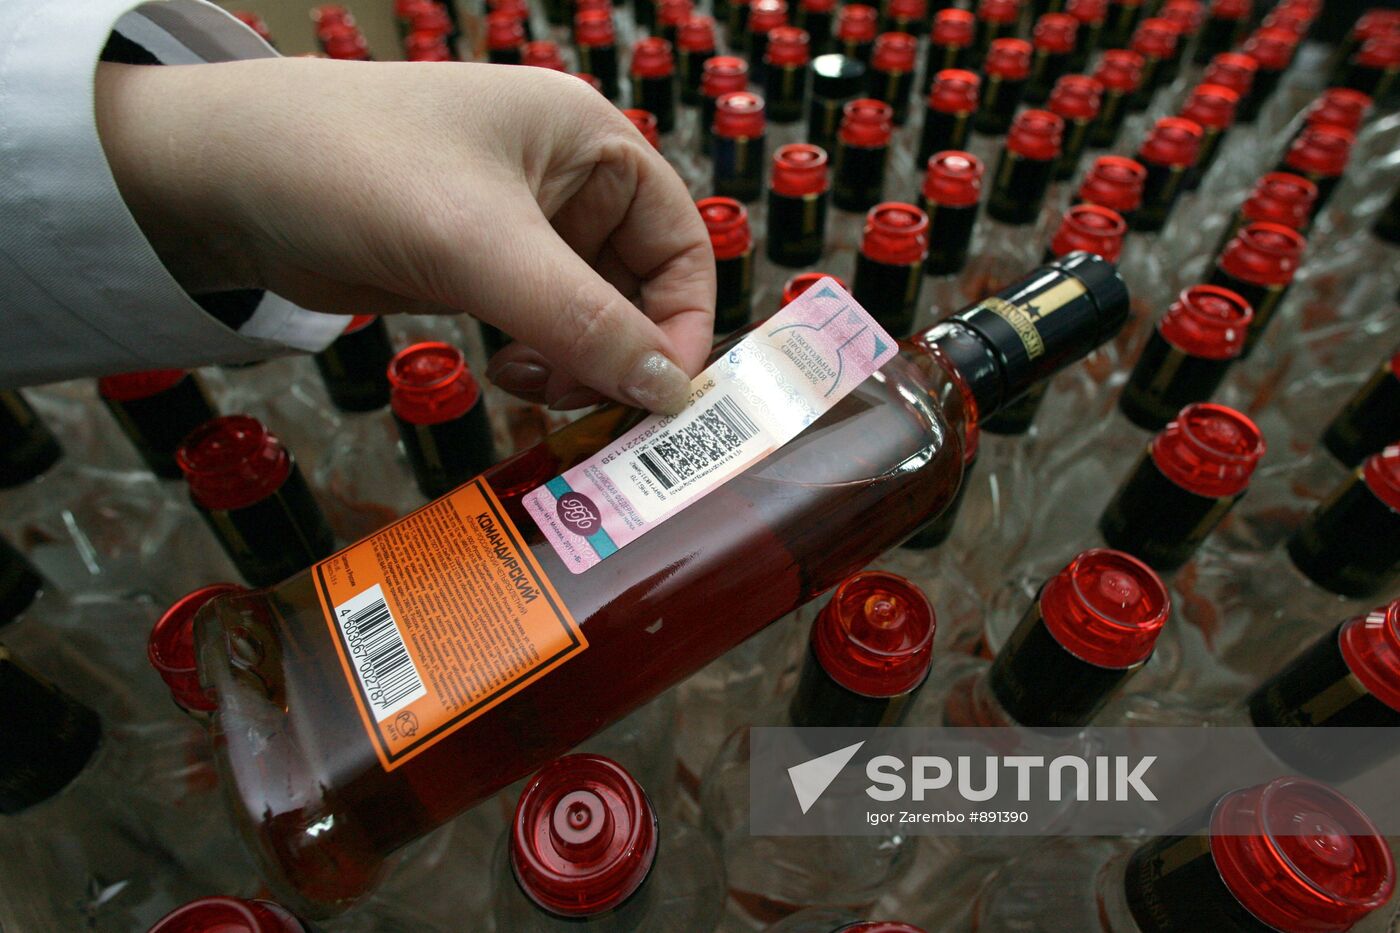 Work at "SPI-RVVC" distillery in Kaliningrad